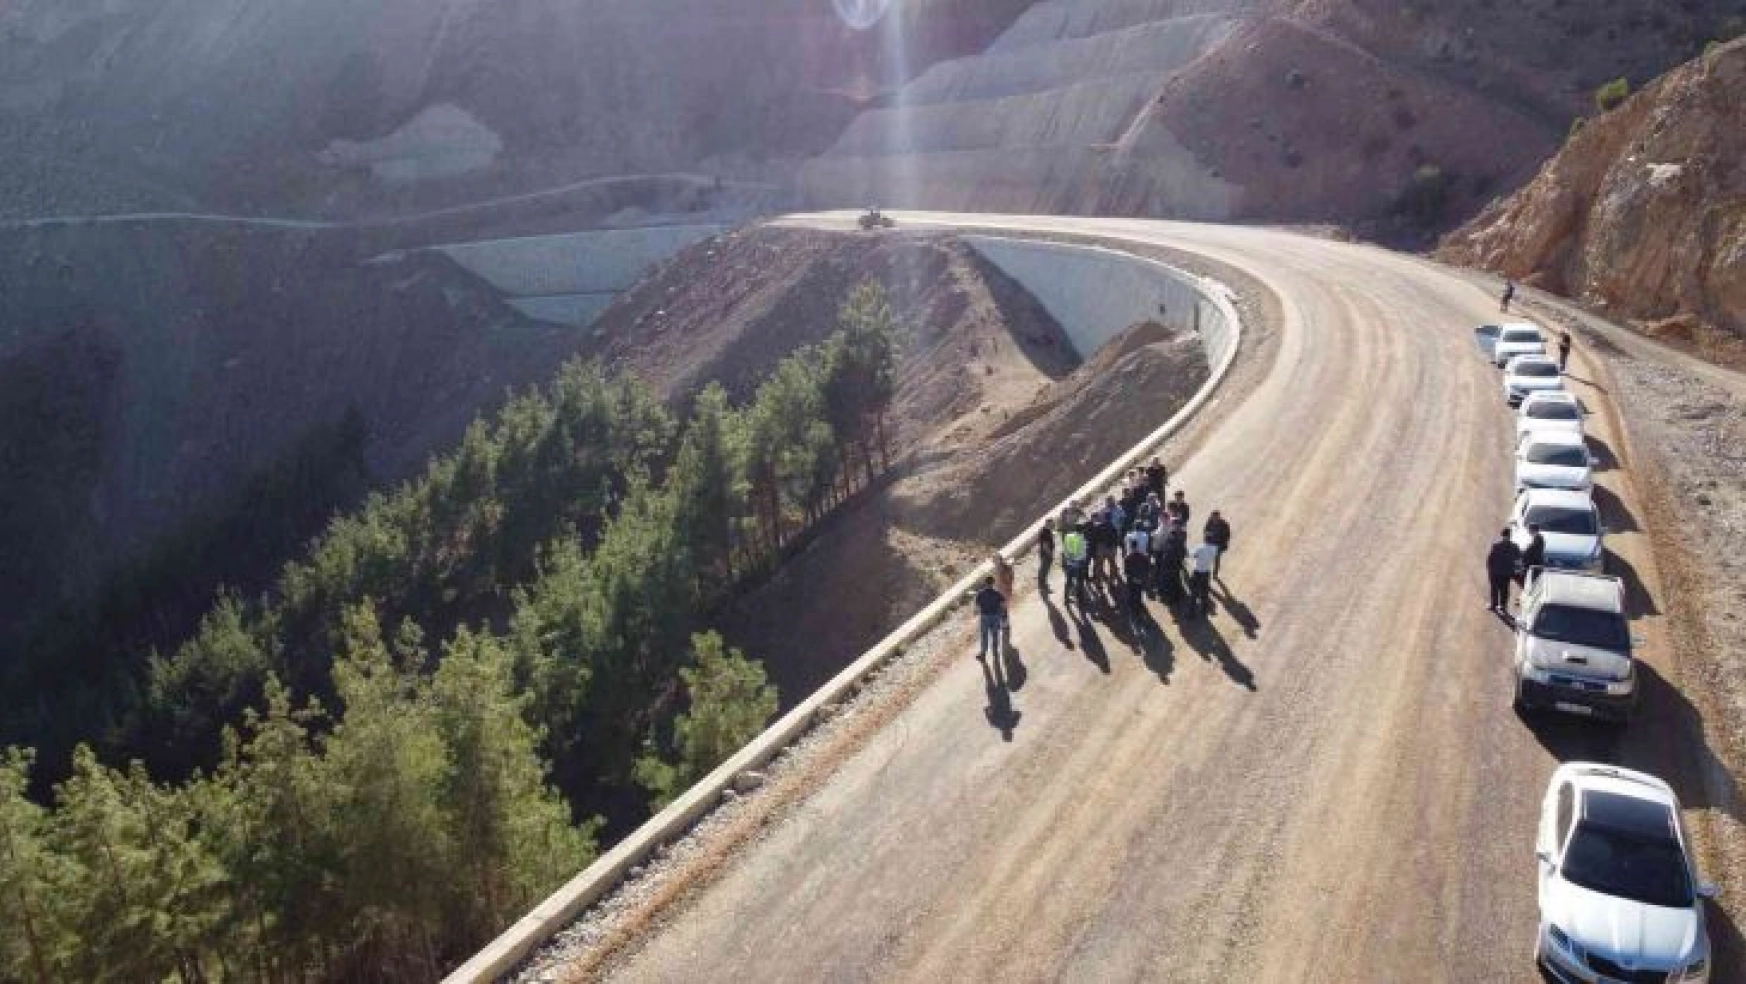 Adana Kozan ile Kayseri arası 105 kilometreye düşecek çalışmalar hızla sürüyor